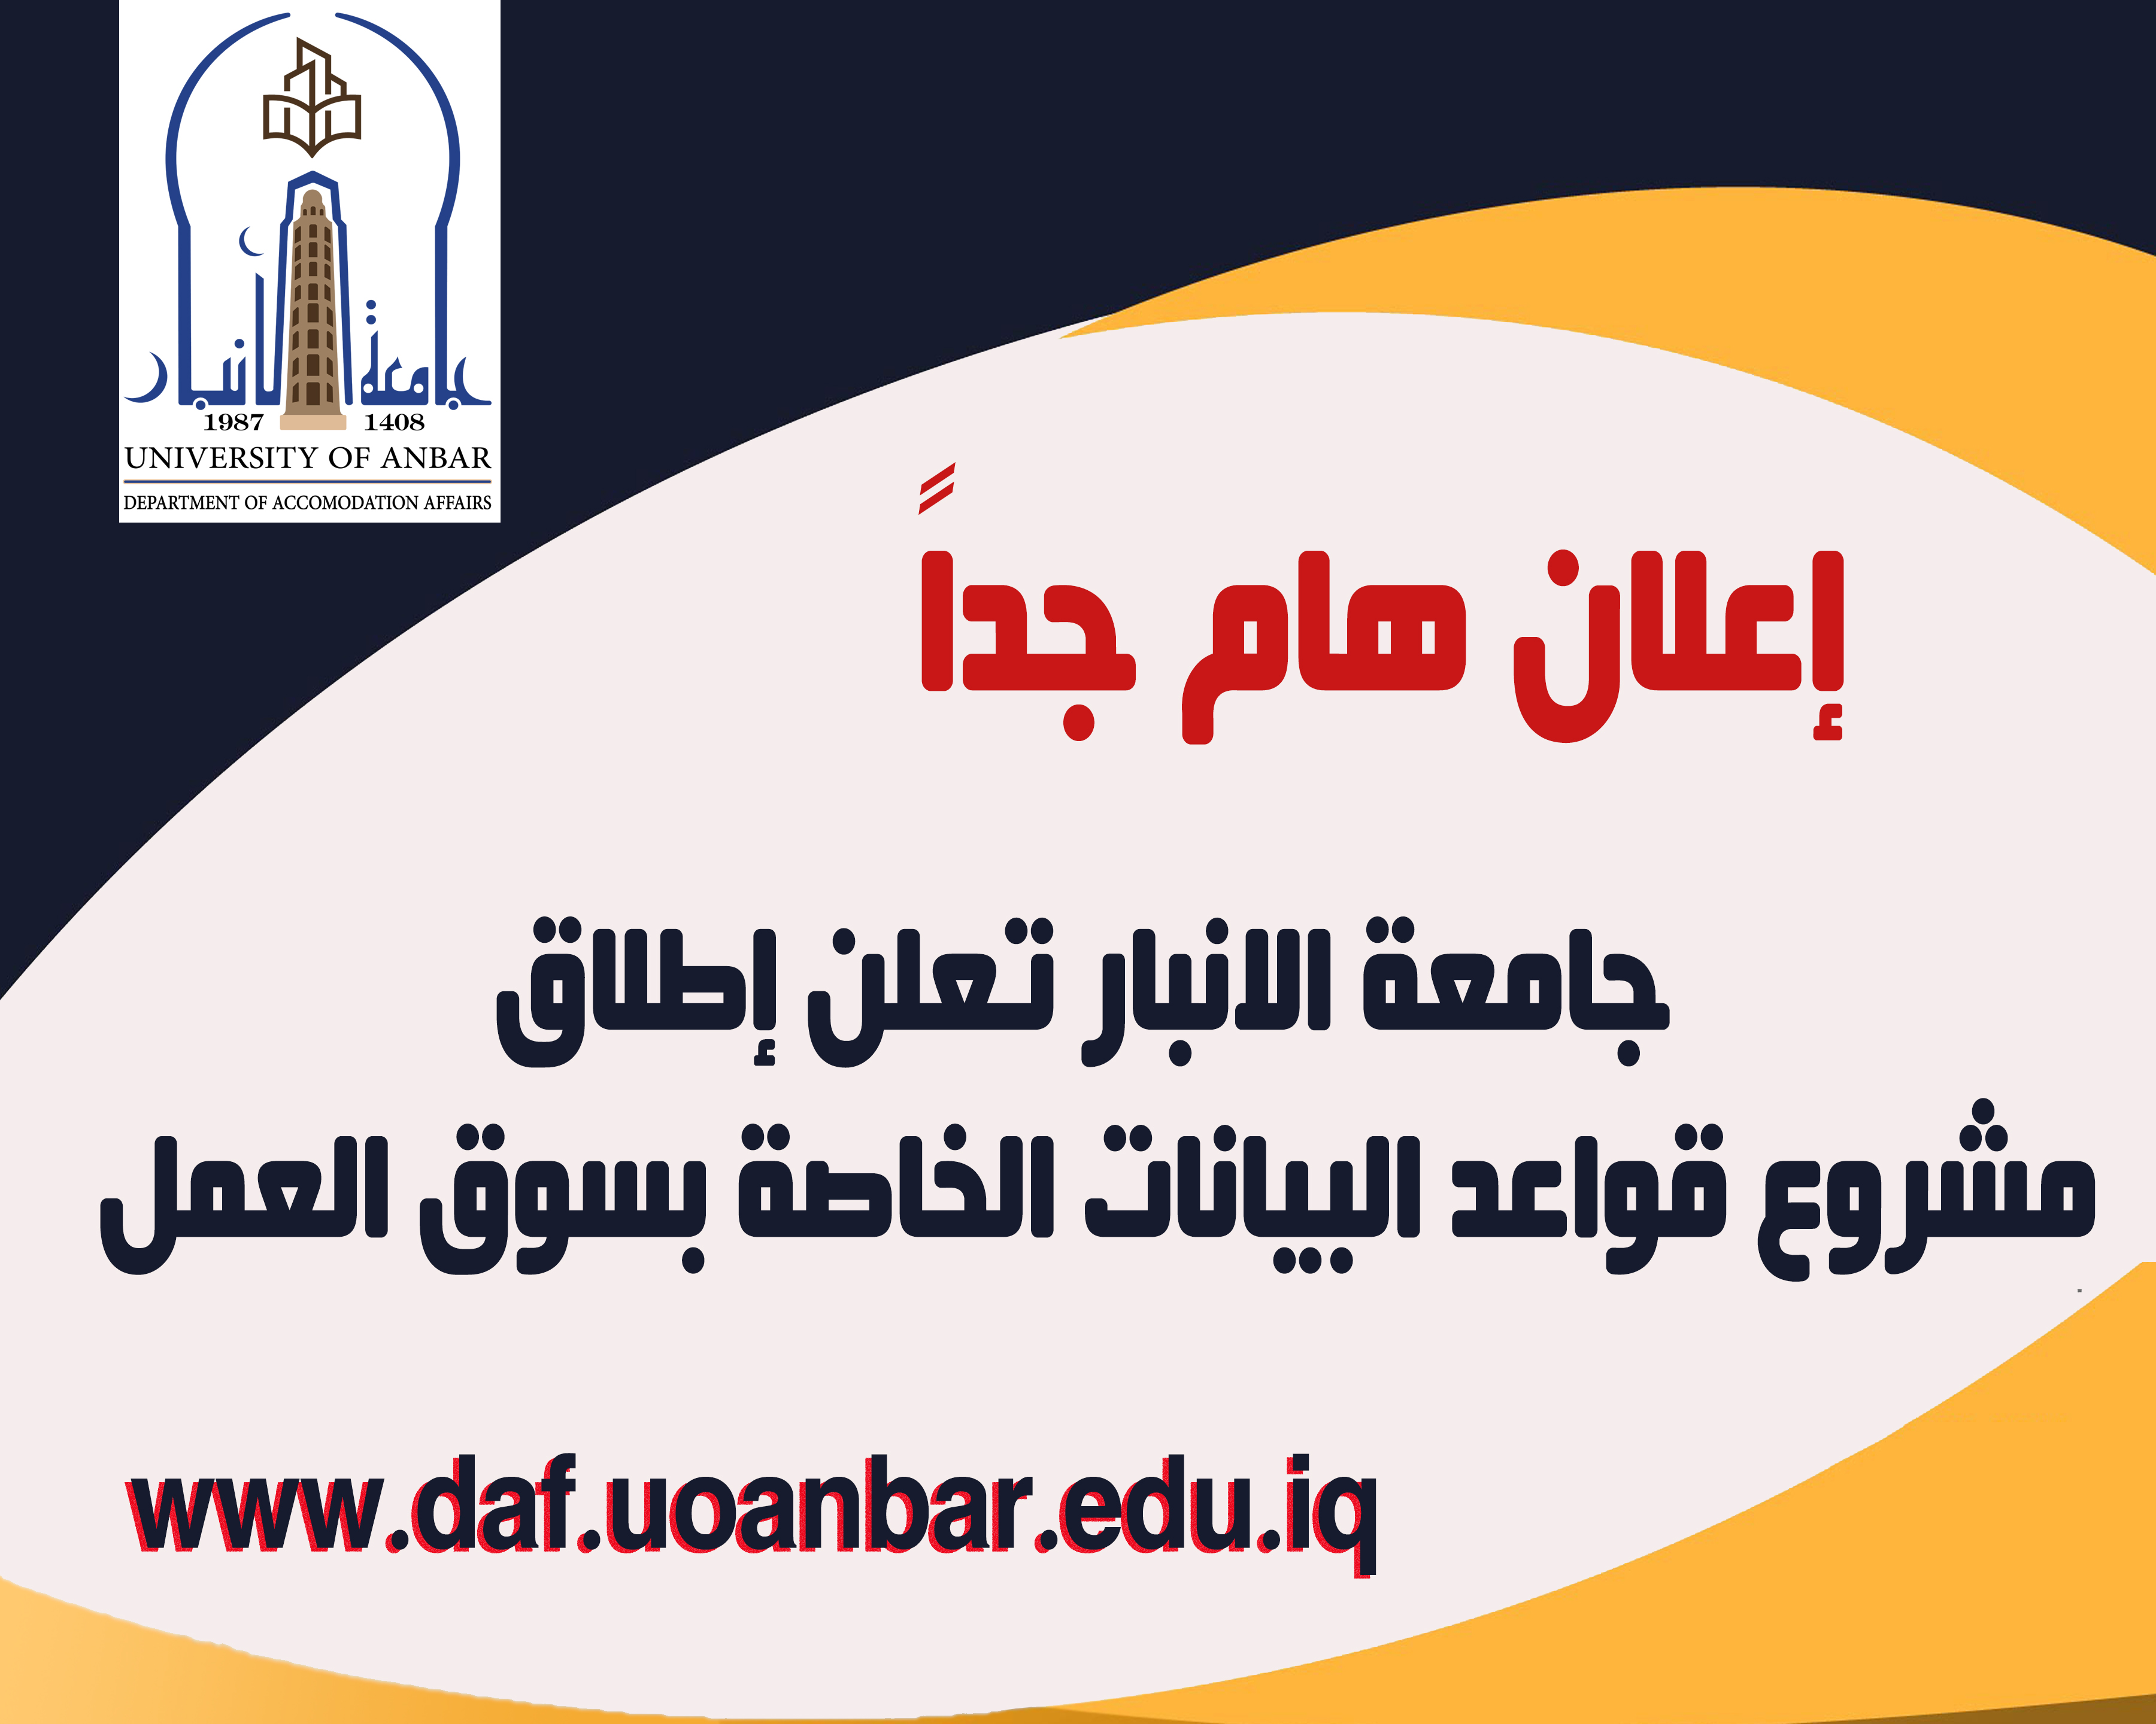 جامعة الانبار تعلن عن إطلاق مشروع قواعد البيانات الخاصة بسوق العمل